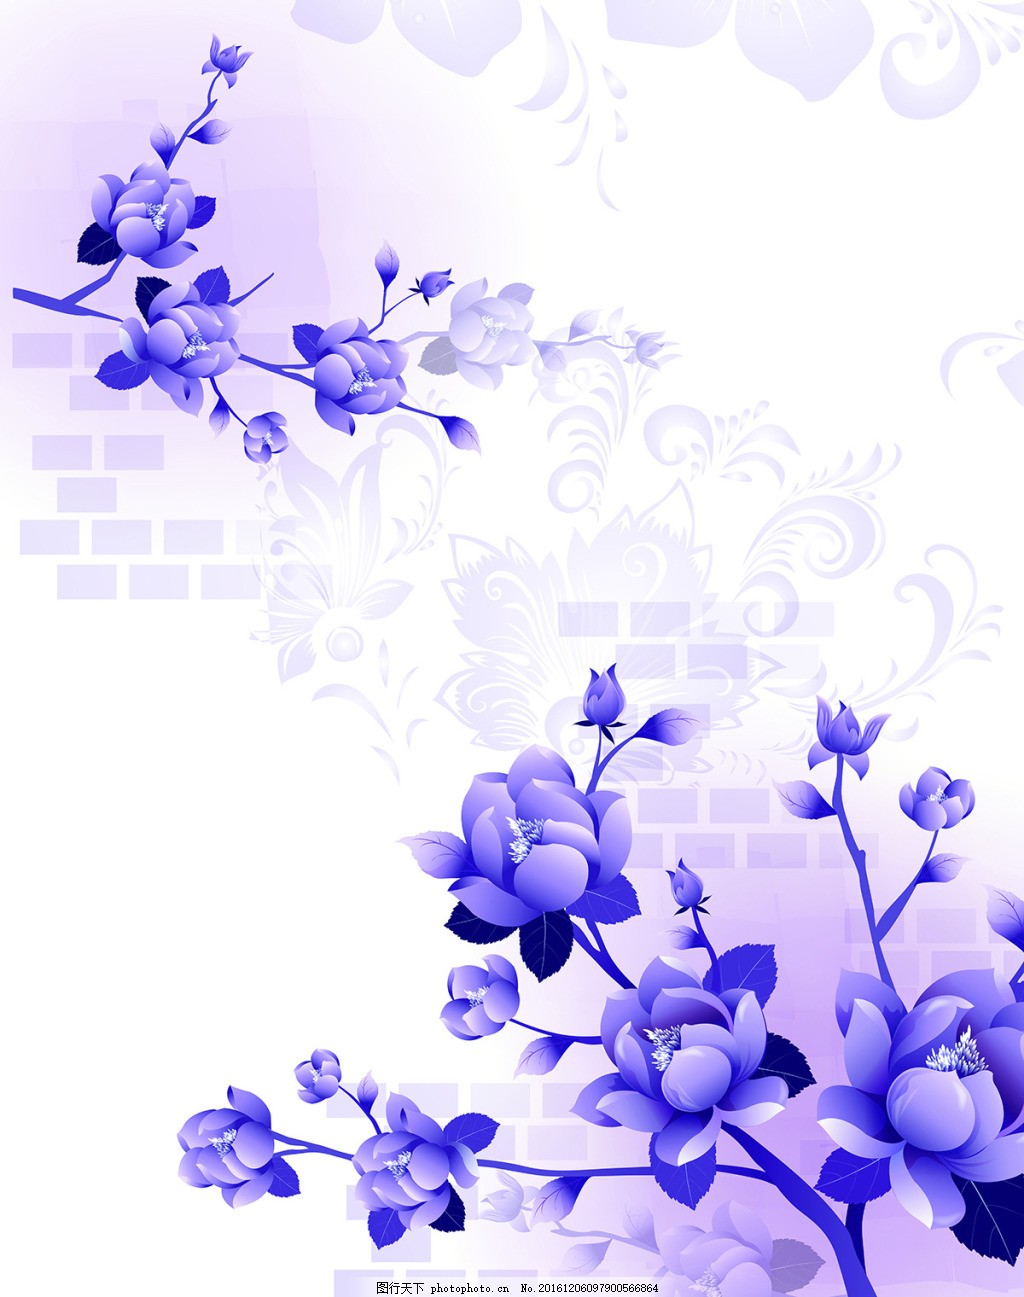 紫色花卉背景墙,壁纸 风景 高分辨率图片 高清大